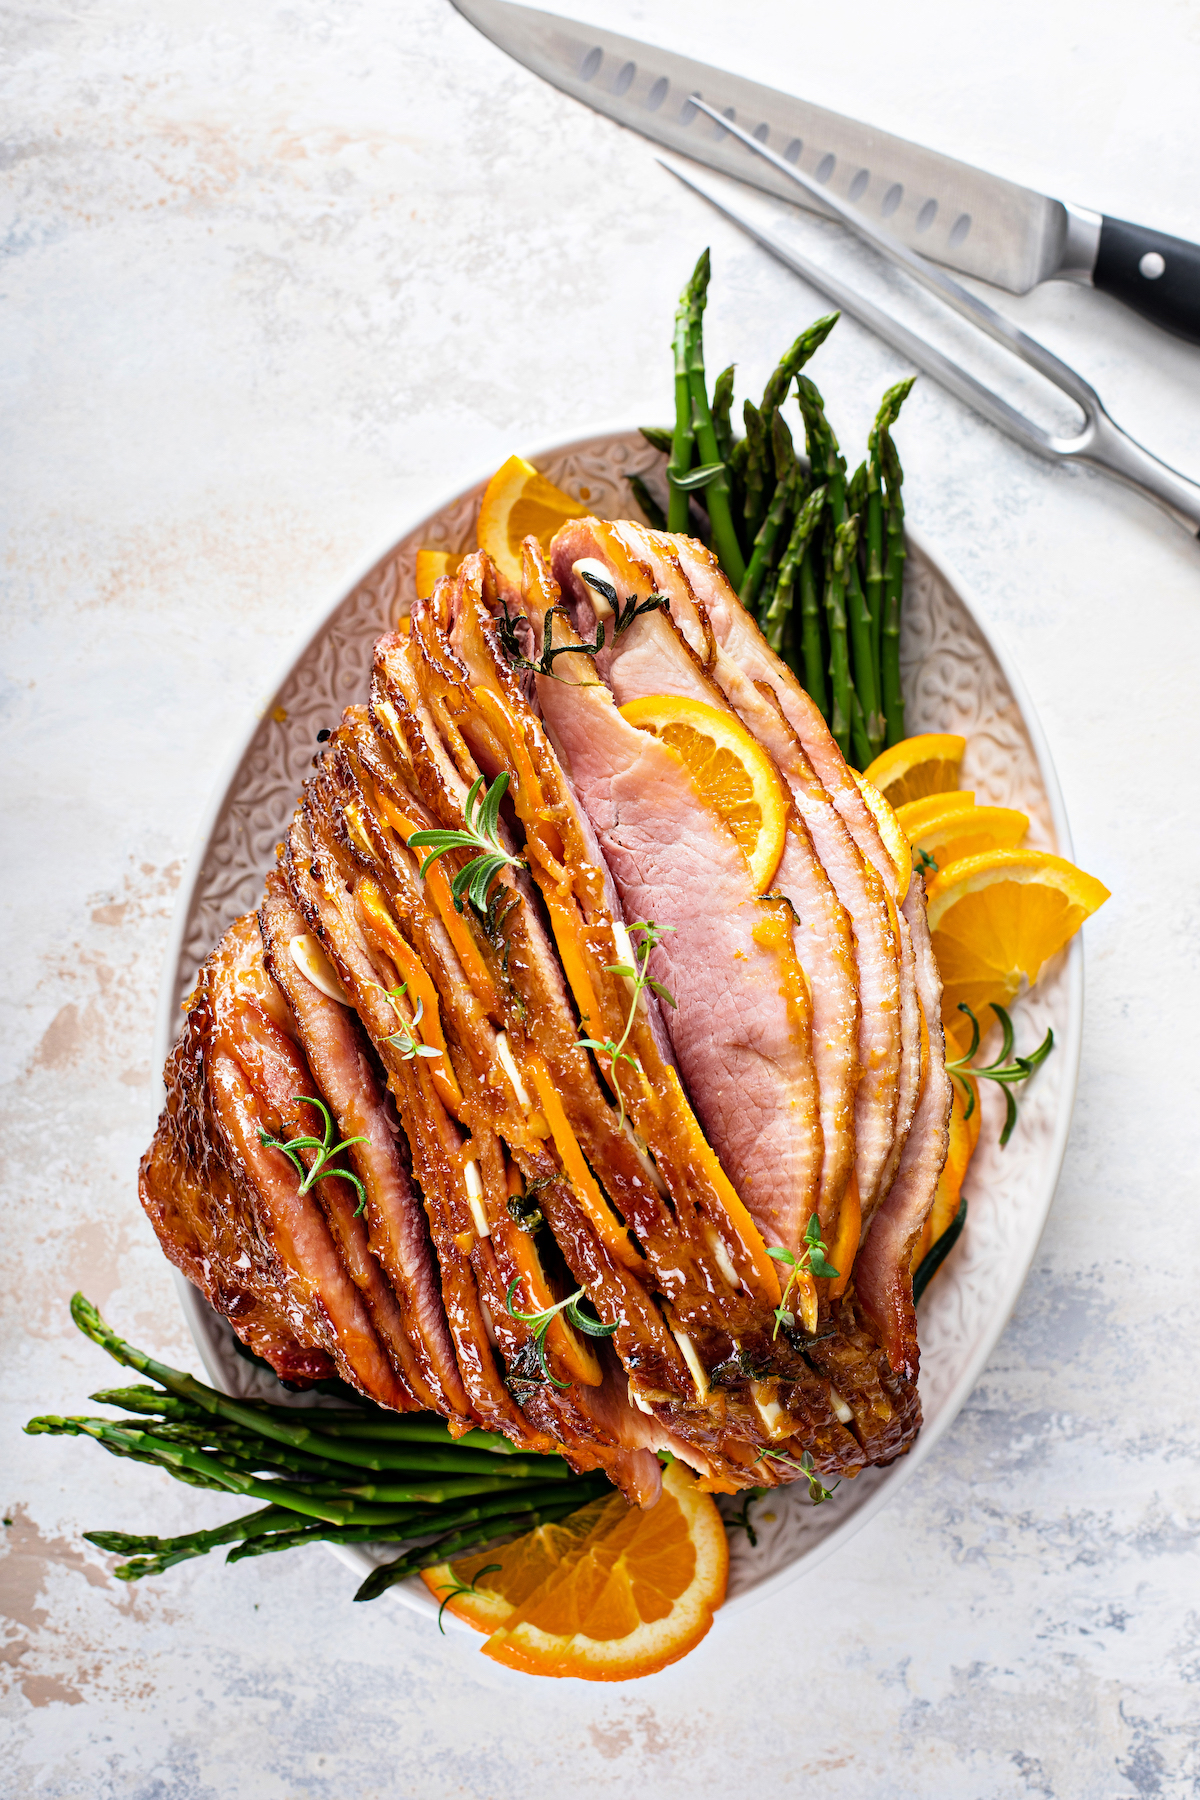 A platter of spiral-sliced glazed ham.